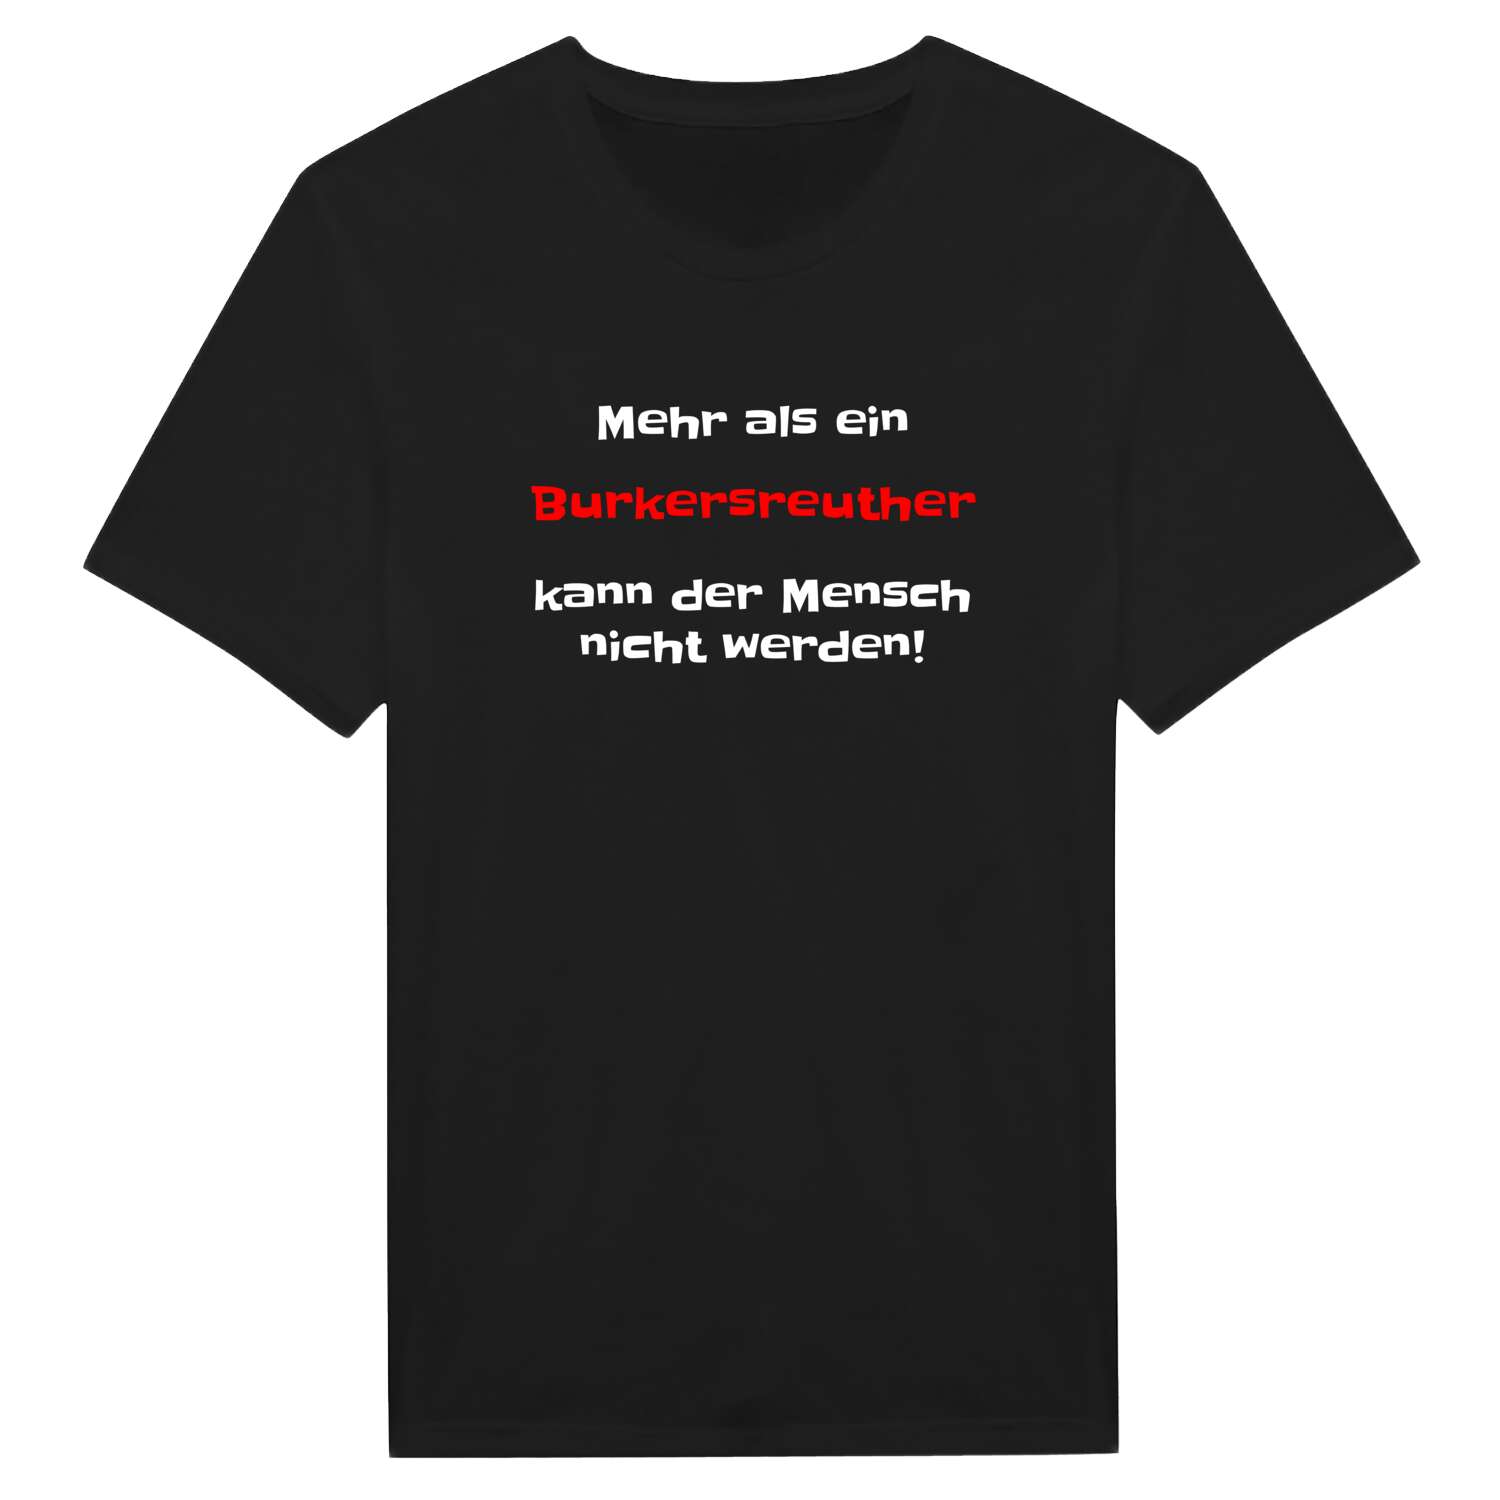 Burkersreuth T-Shirt »Mehr als ein«